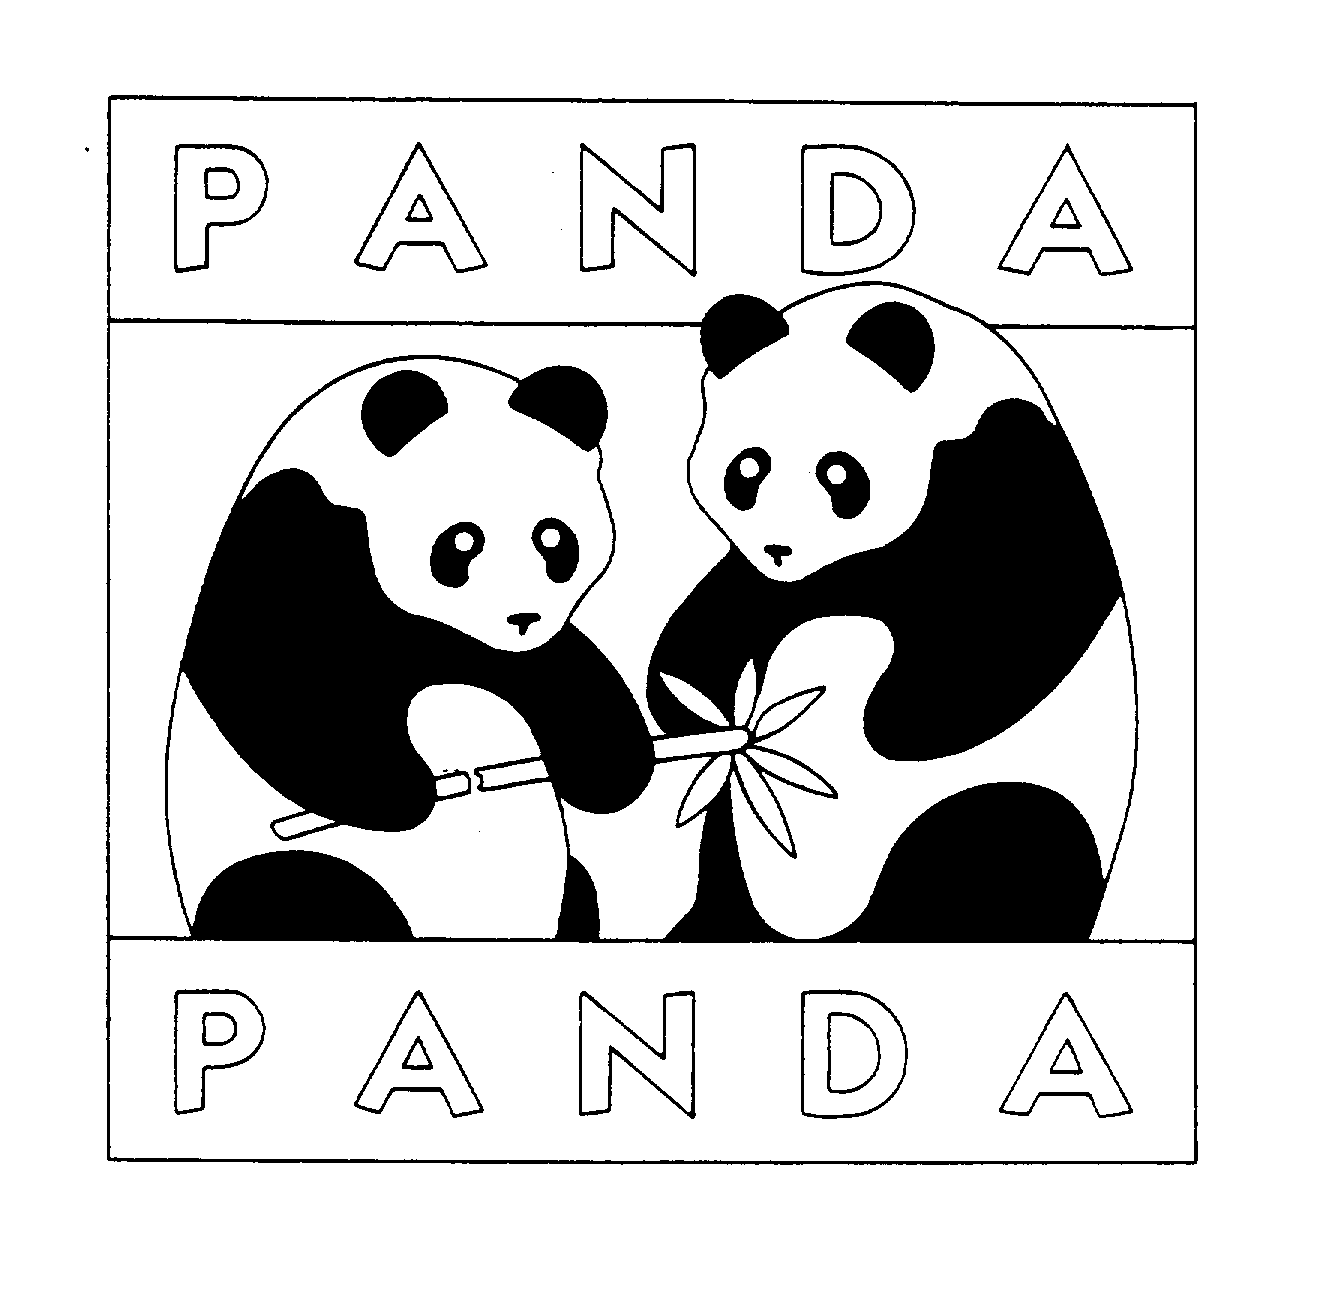  PANDA PANDA